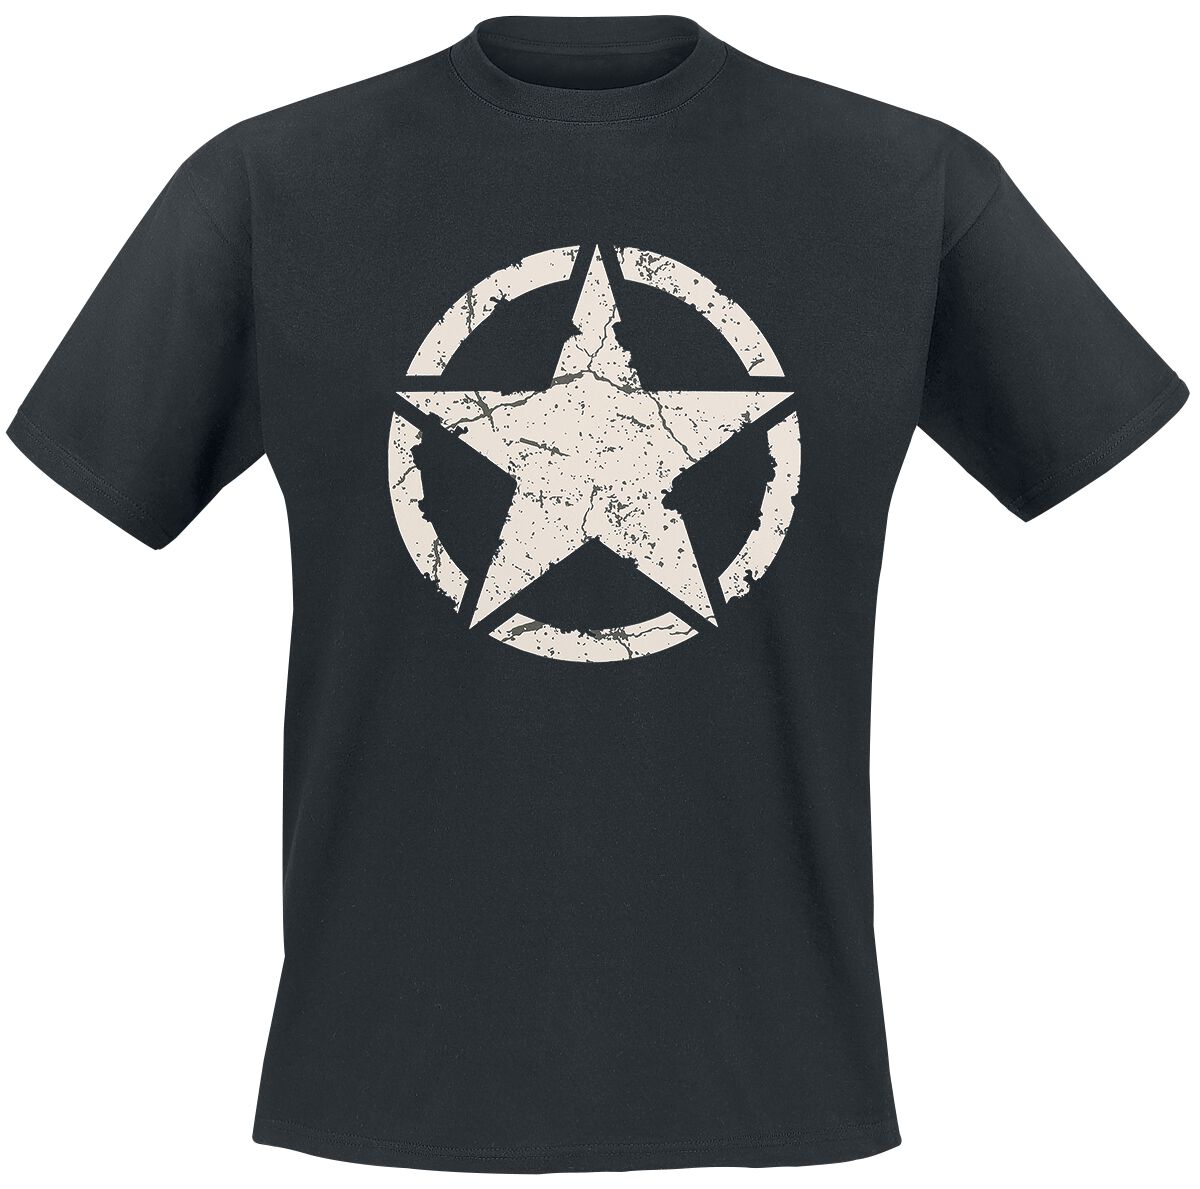 Gasoline Bandit - Rockabilly T-Shirt - Army Star - S bis 4XL - für Männer - Größe XL - schwarz